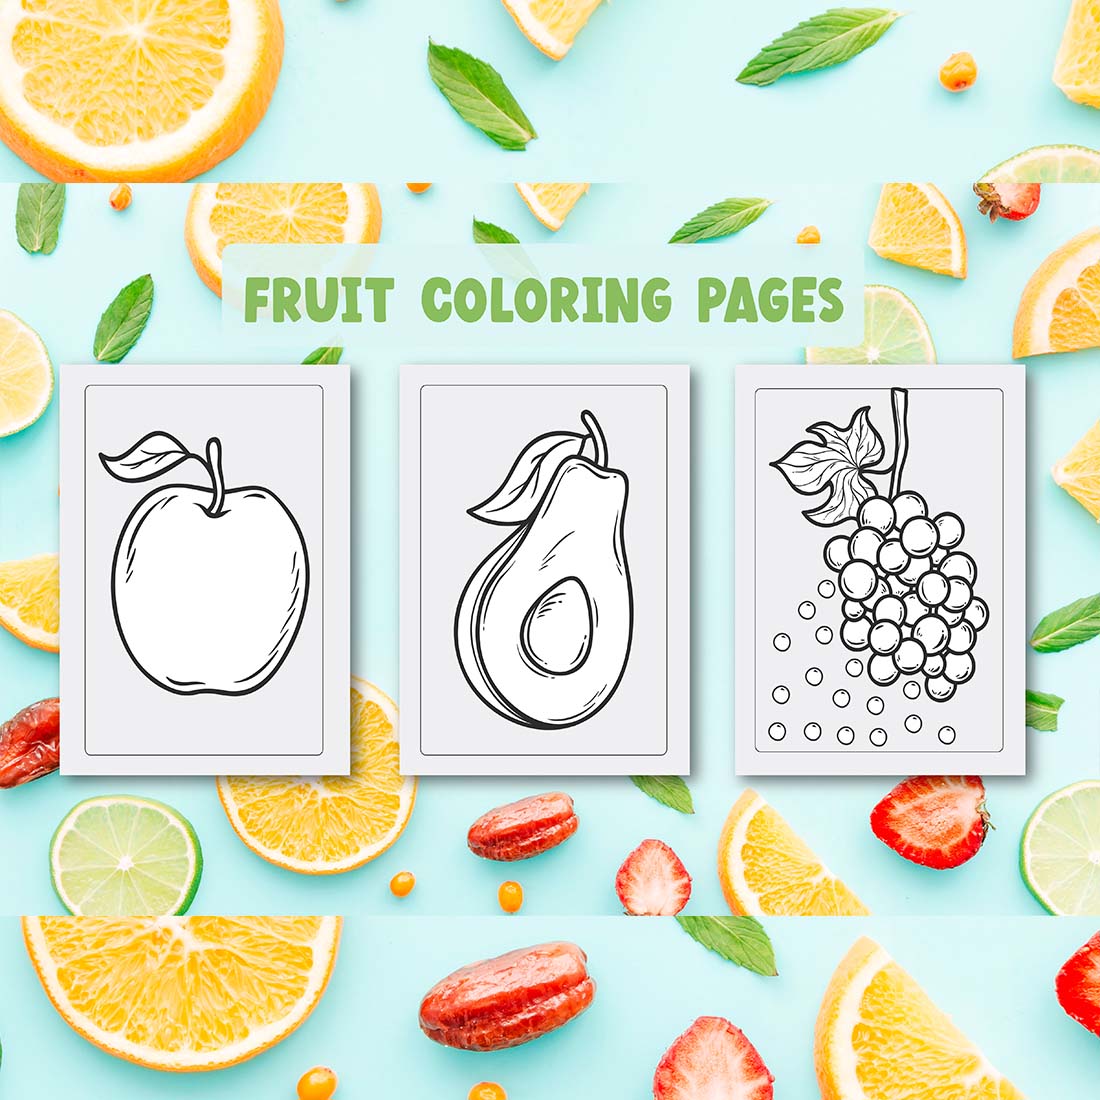 Fruit Coloring Pages KDP Design facebook image.